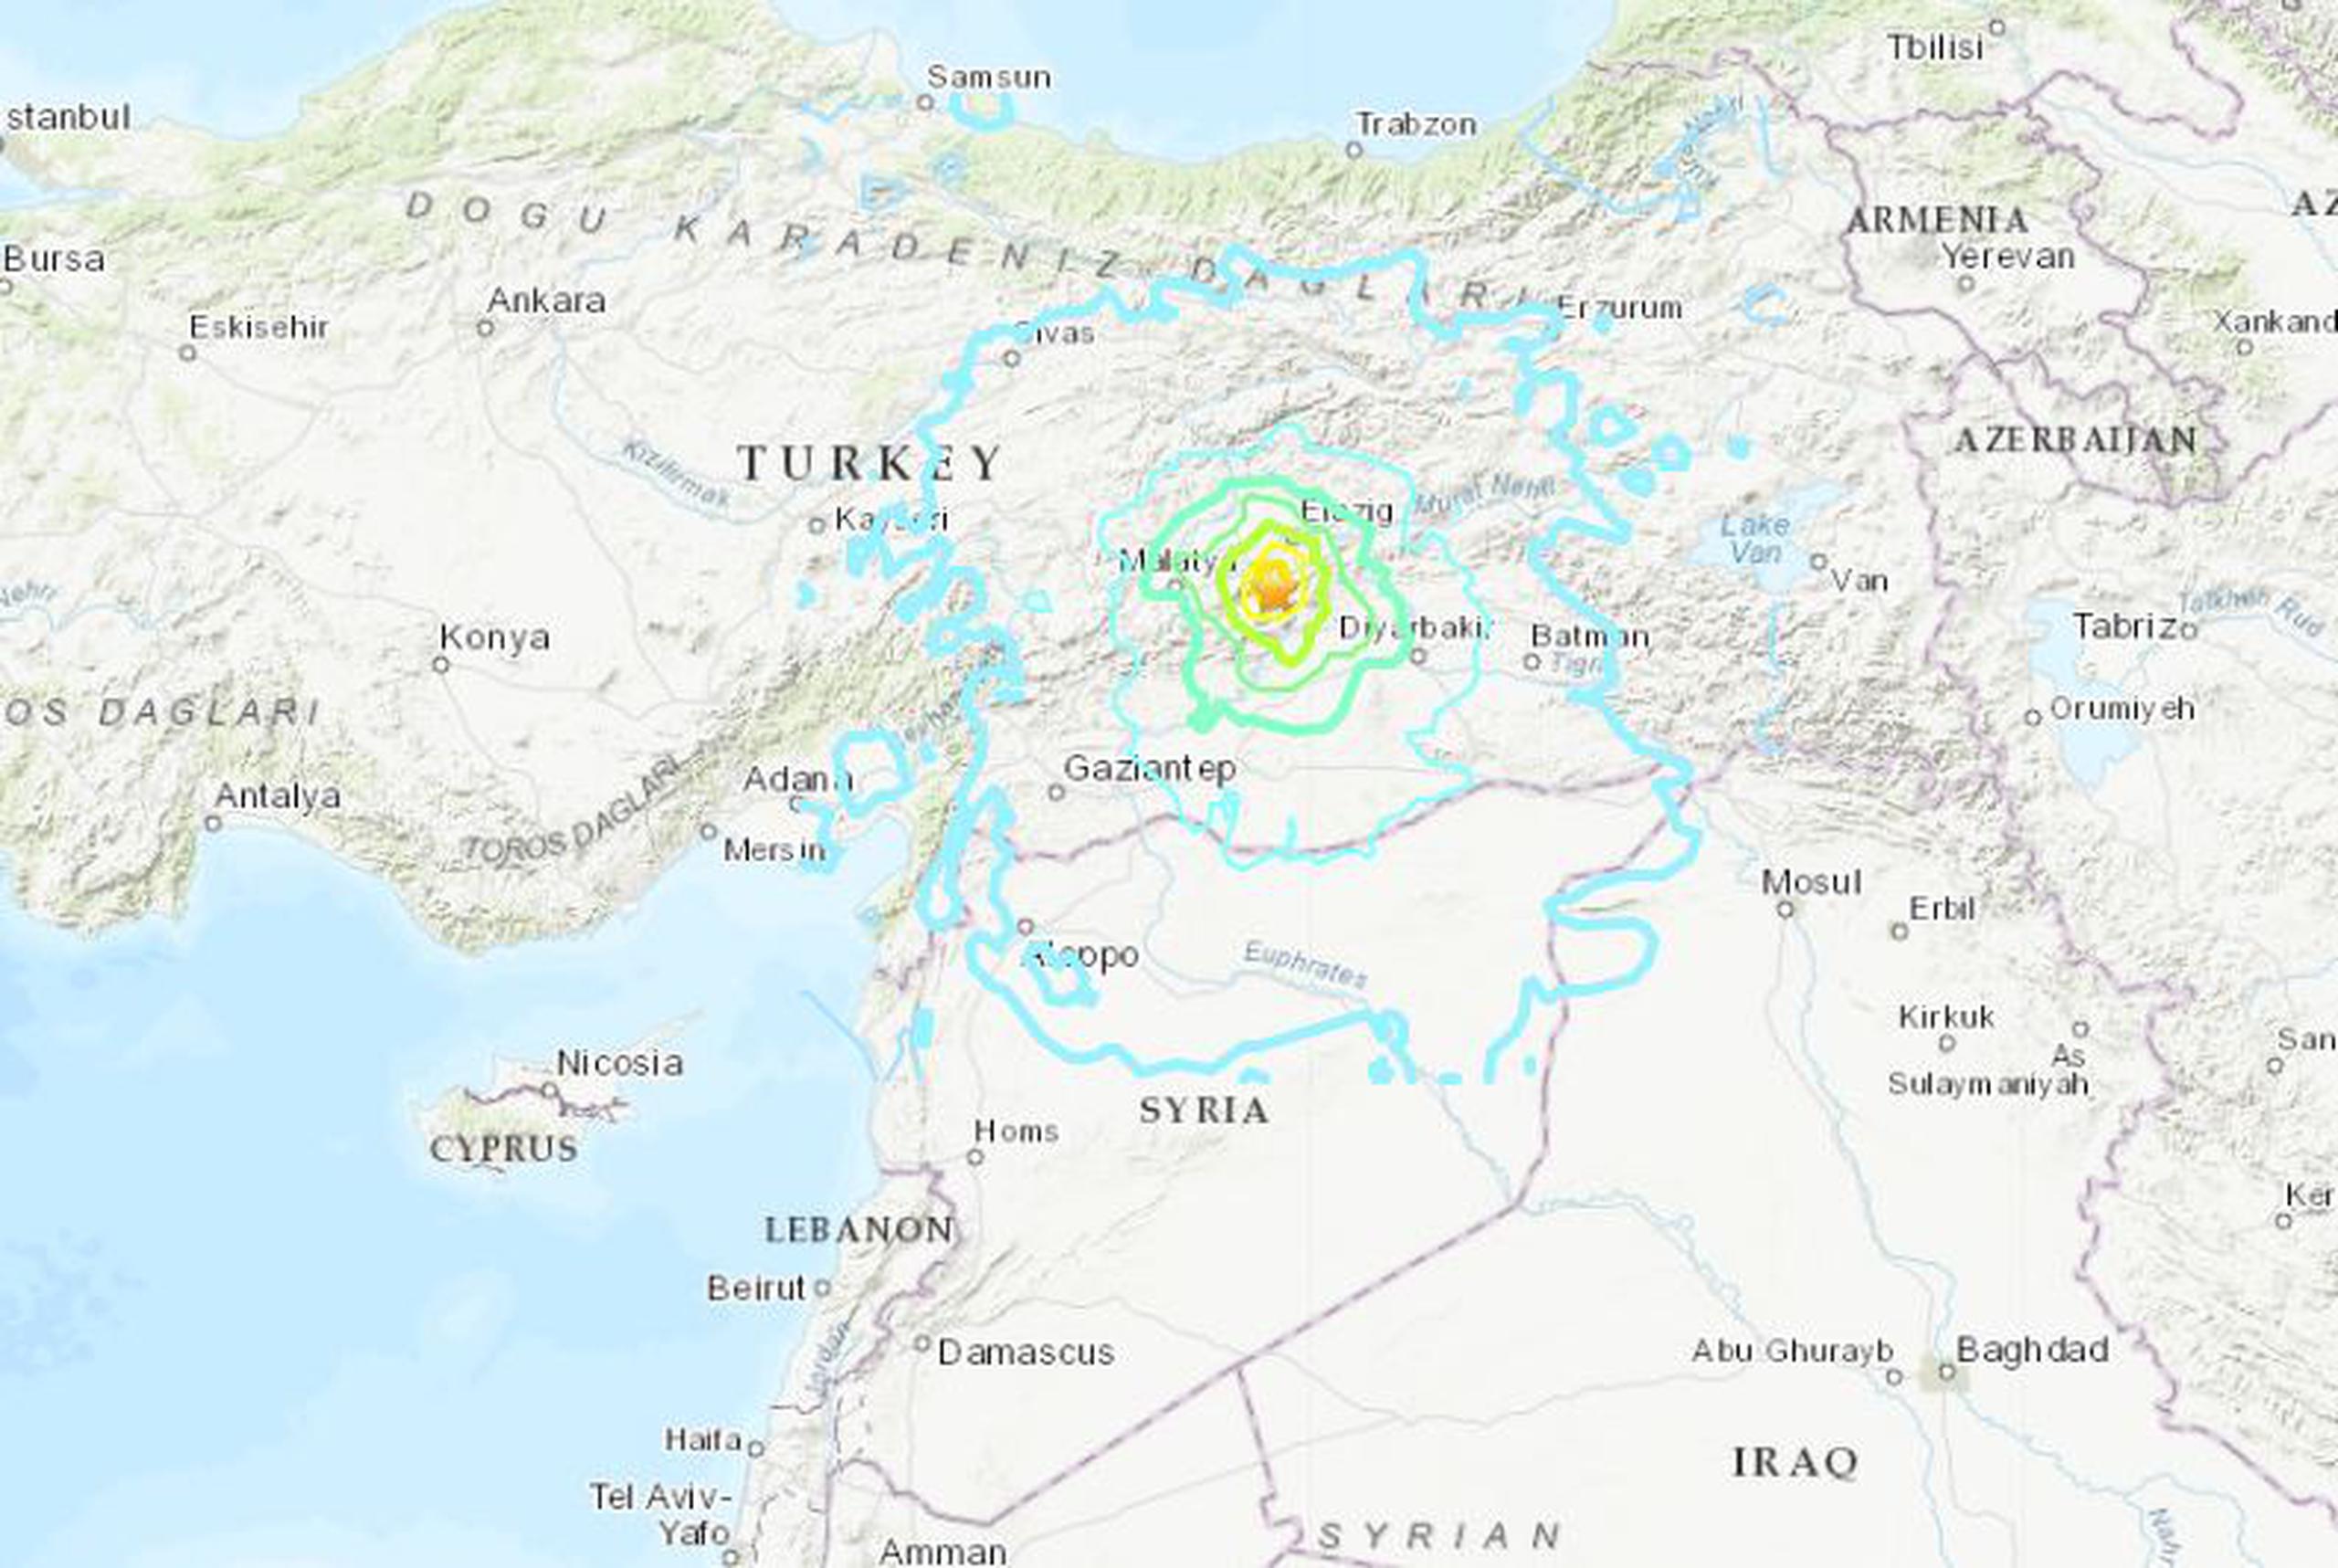 La estrella en el mapa representa el epicentro del terremoto. (Servicio Geológico de los Estados Unidos)